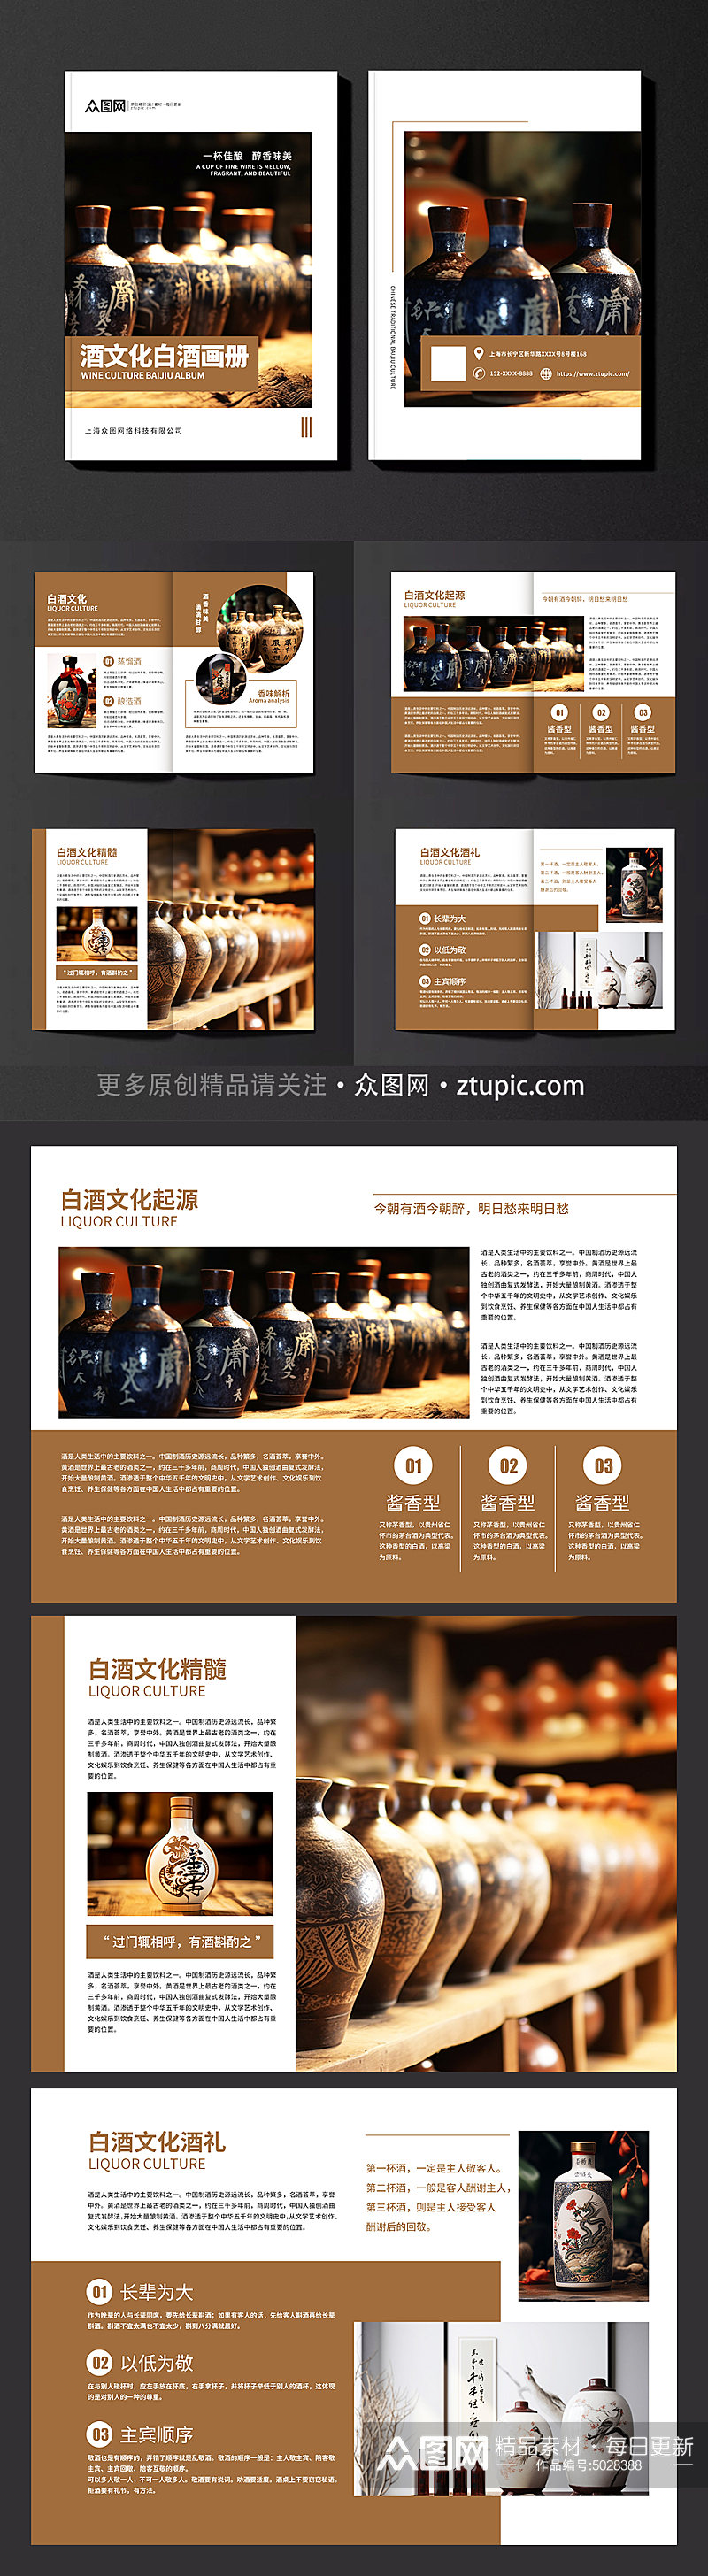 酒文化白酒宣传画册素材